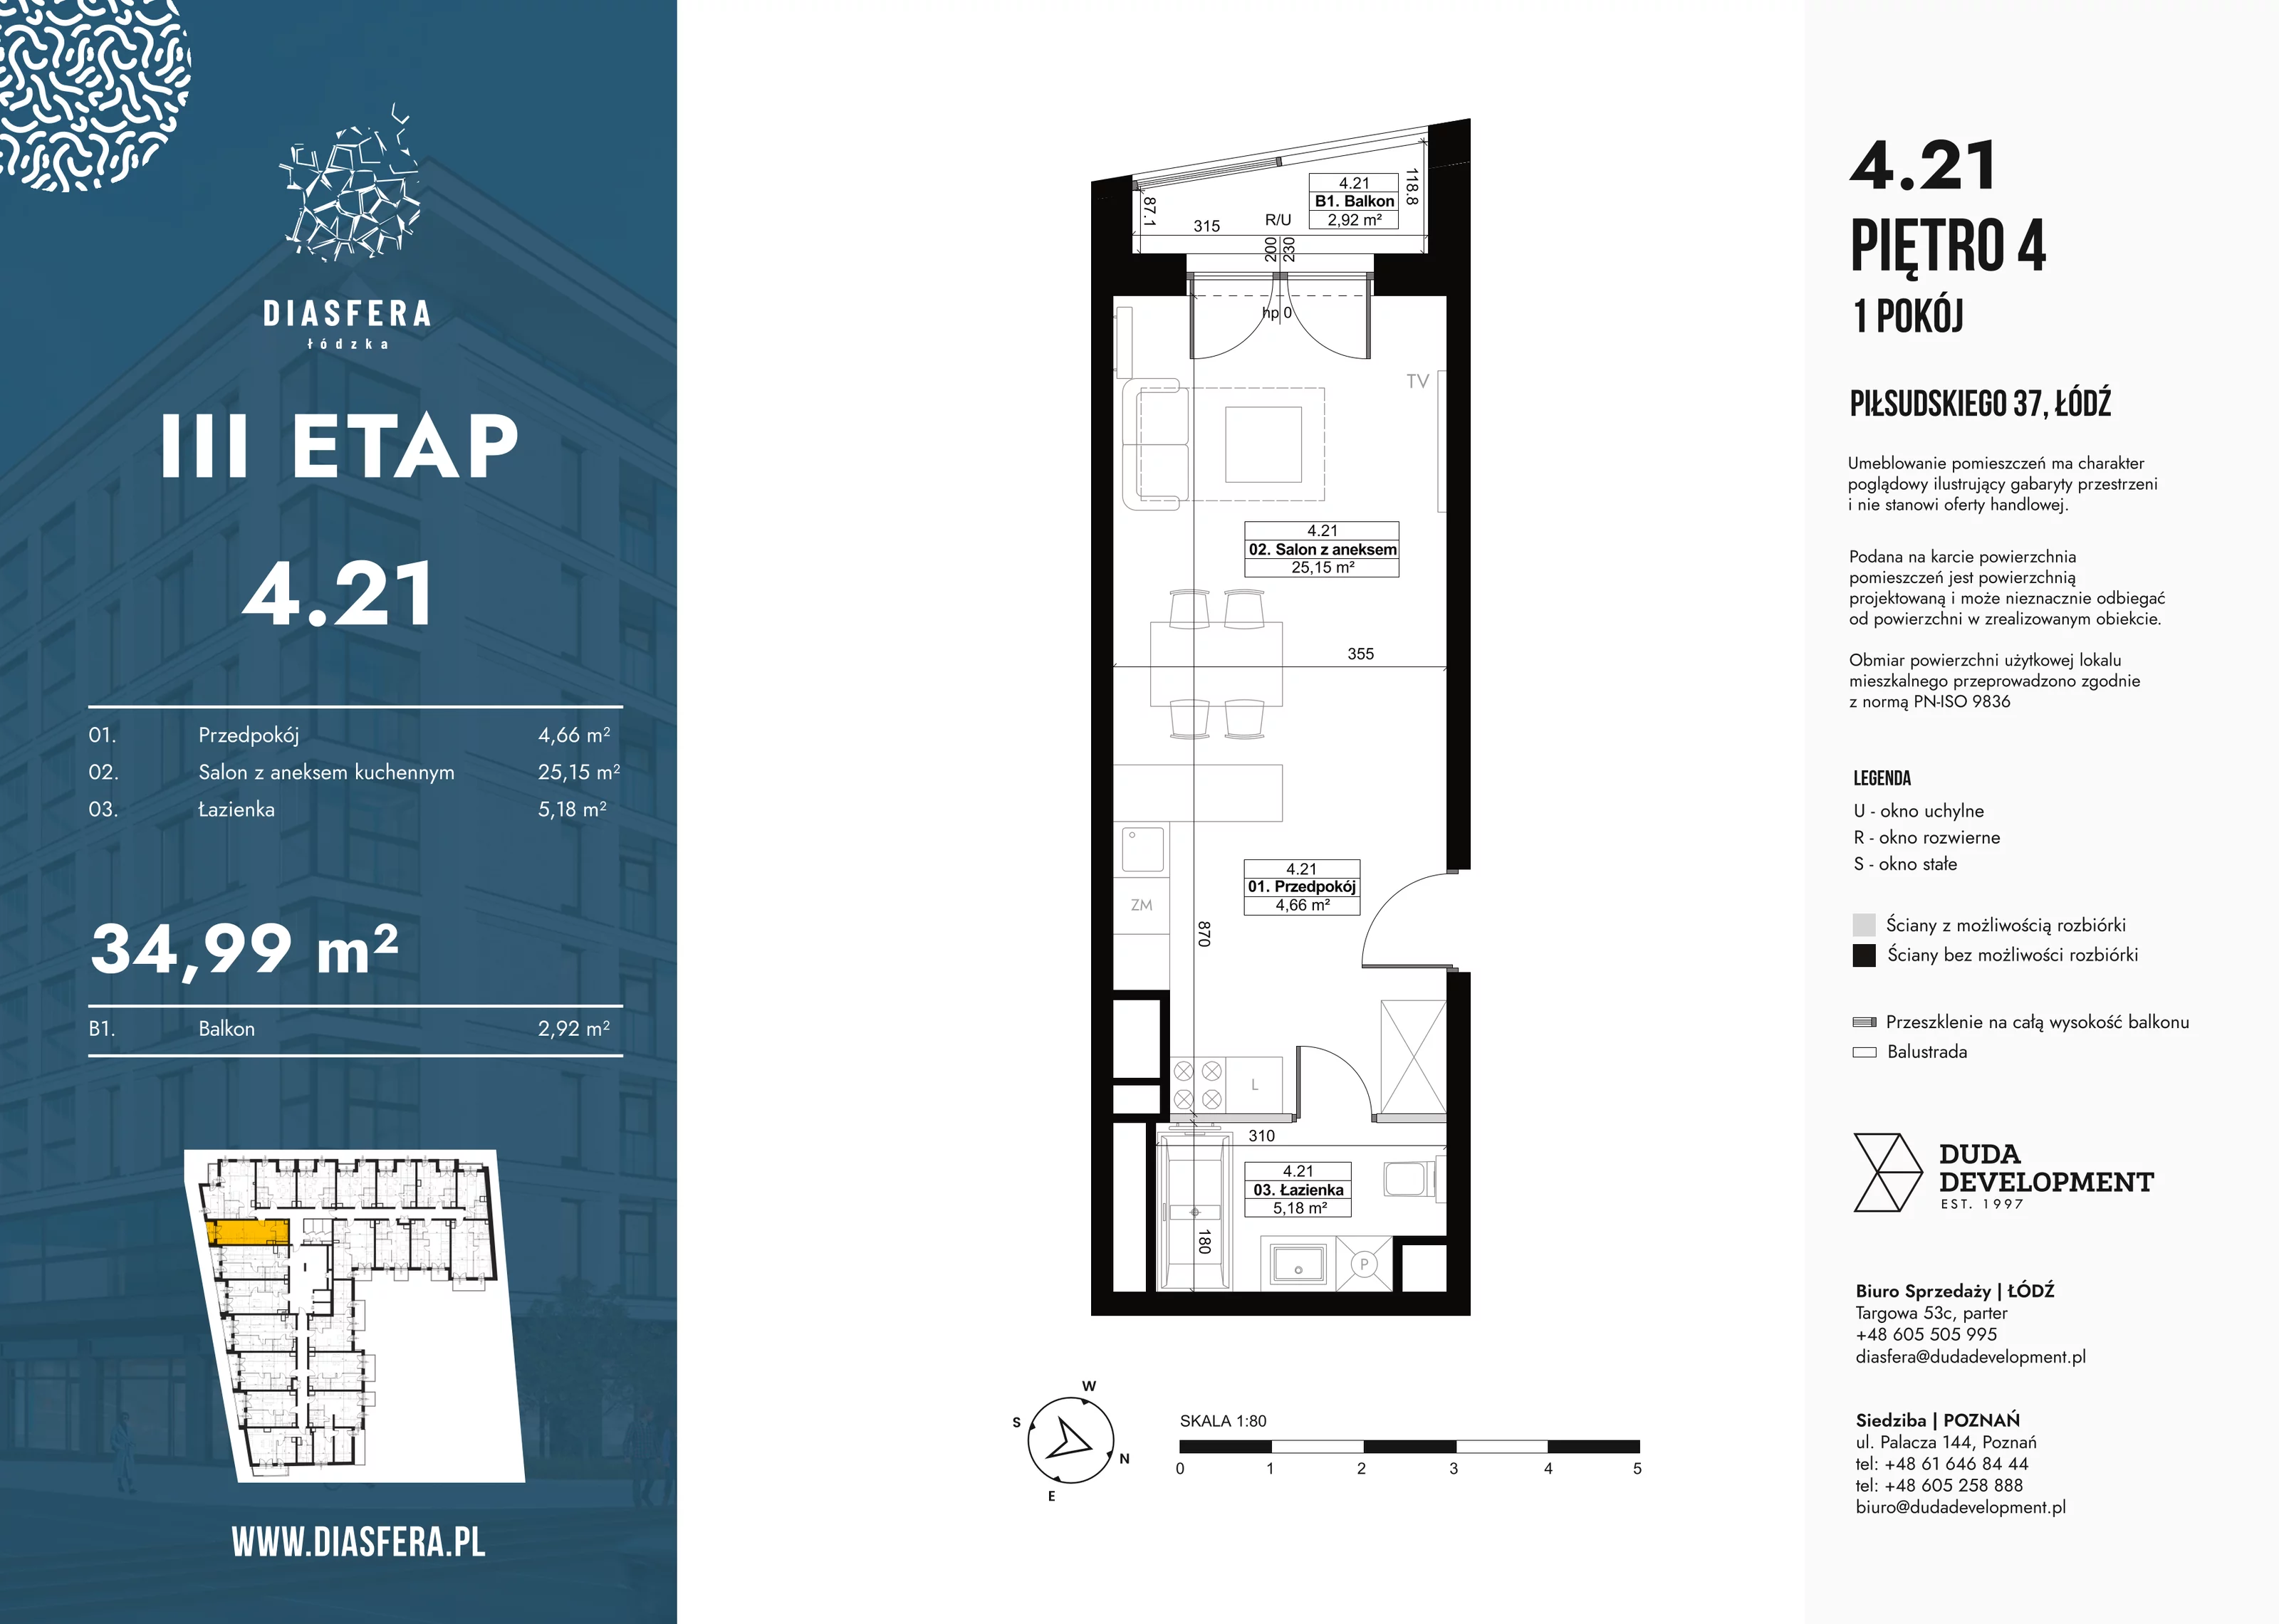 Mieszkanie 34,99 m², piętro 4, oferta nr 4_21, Diasfera III, Łódź, Śródmieście, al. Piłsudskiego 37